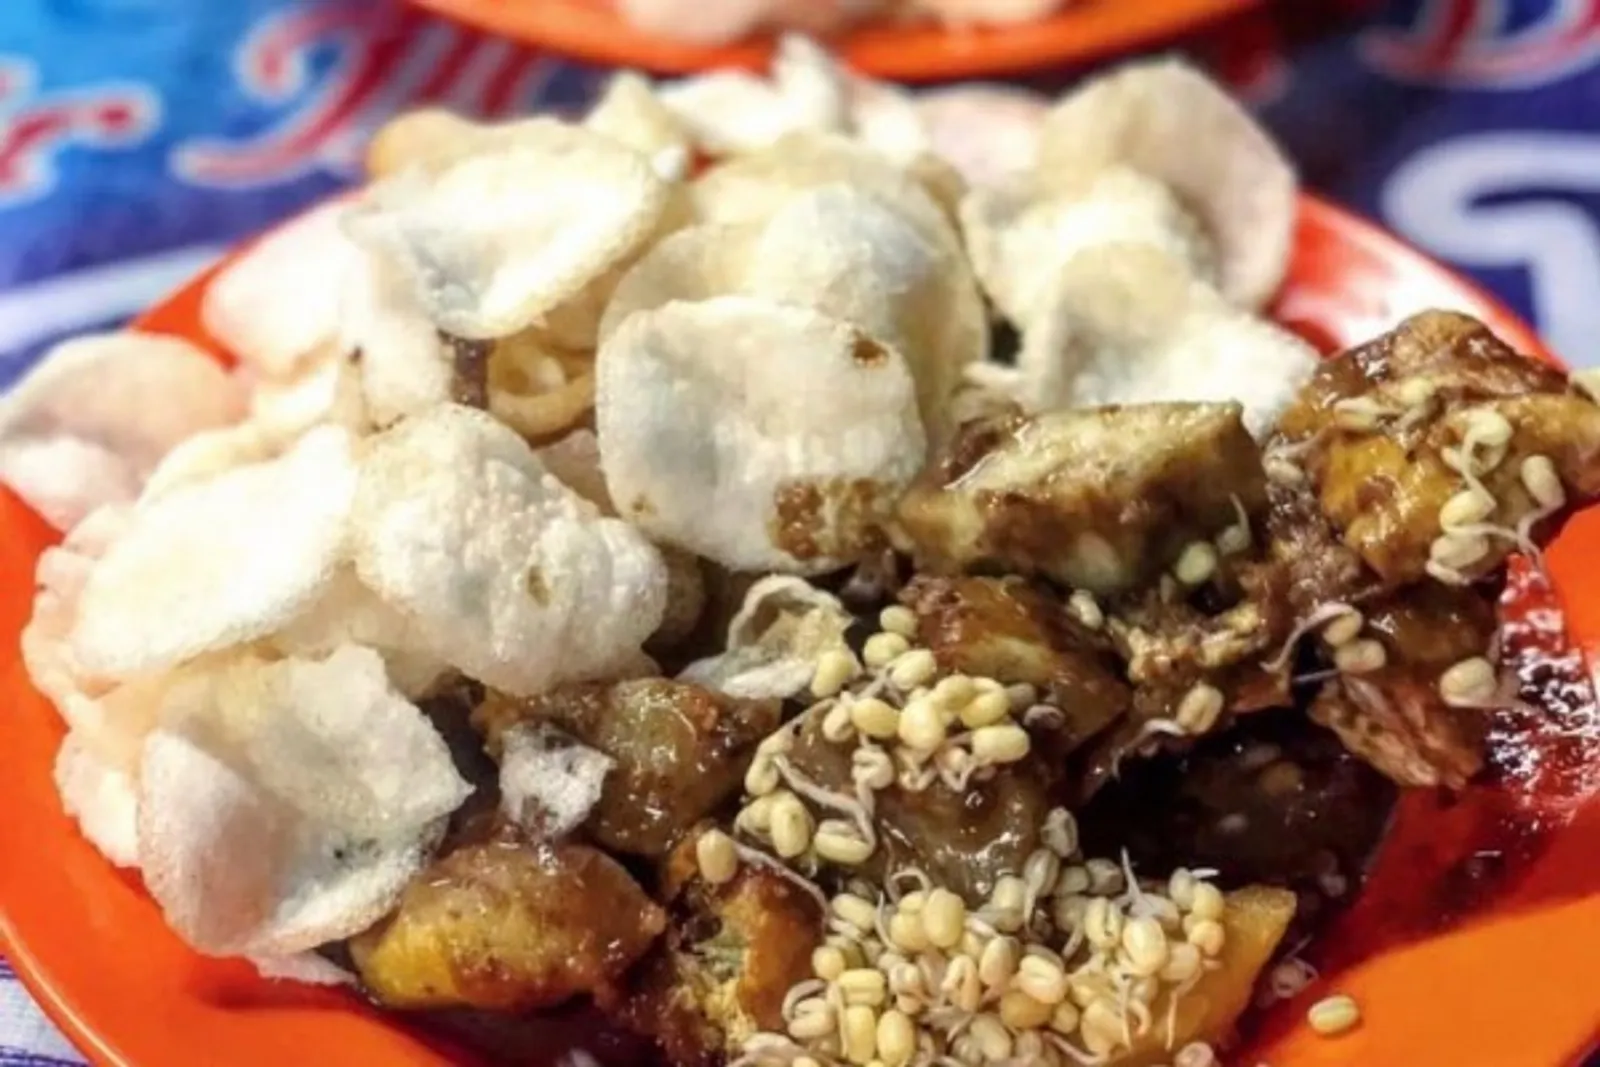 Lapar di Malam Hari? Ini 7 Rekomendasi Kuliner Malam di Surabaya